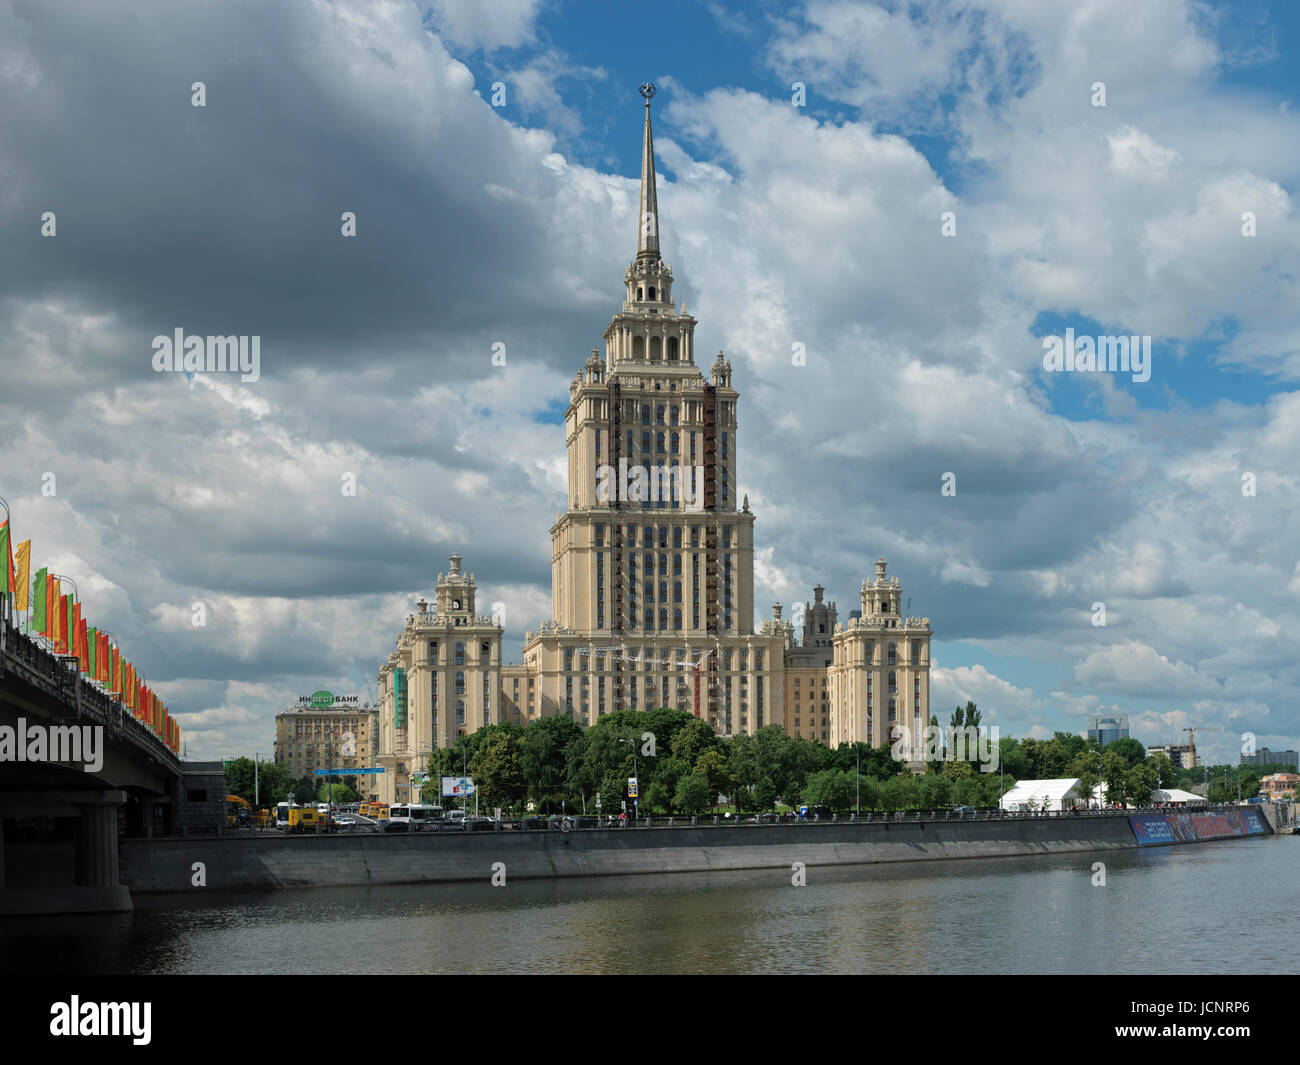 Le bâtiment de Staline - Hôtel Ukraina, l'une des sept soeurs de la rivière Moskova, bâtiments, Moscou, Russie, Europe Banque D'Images